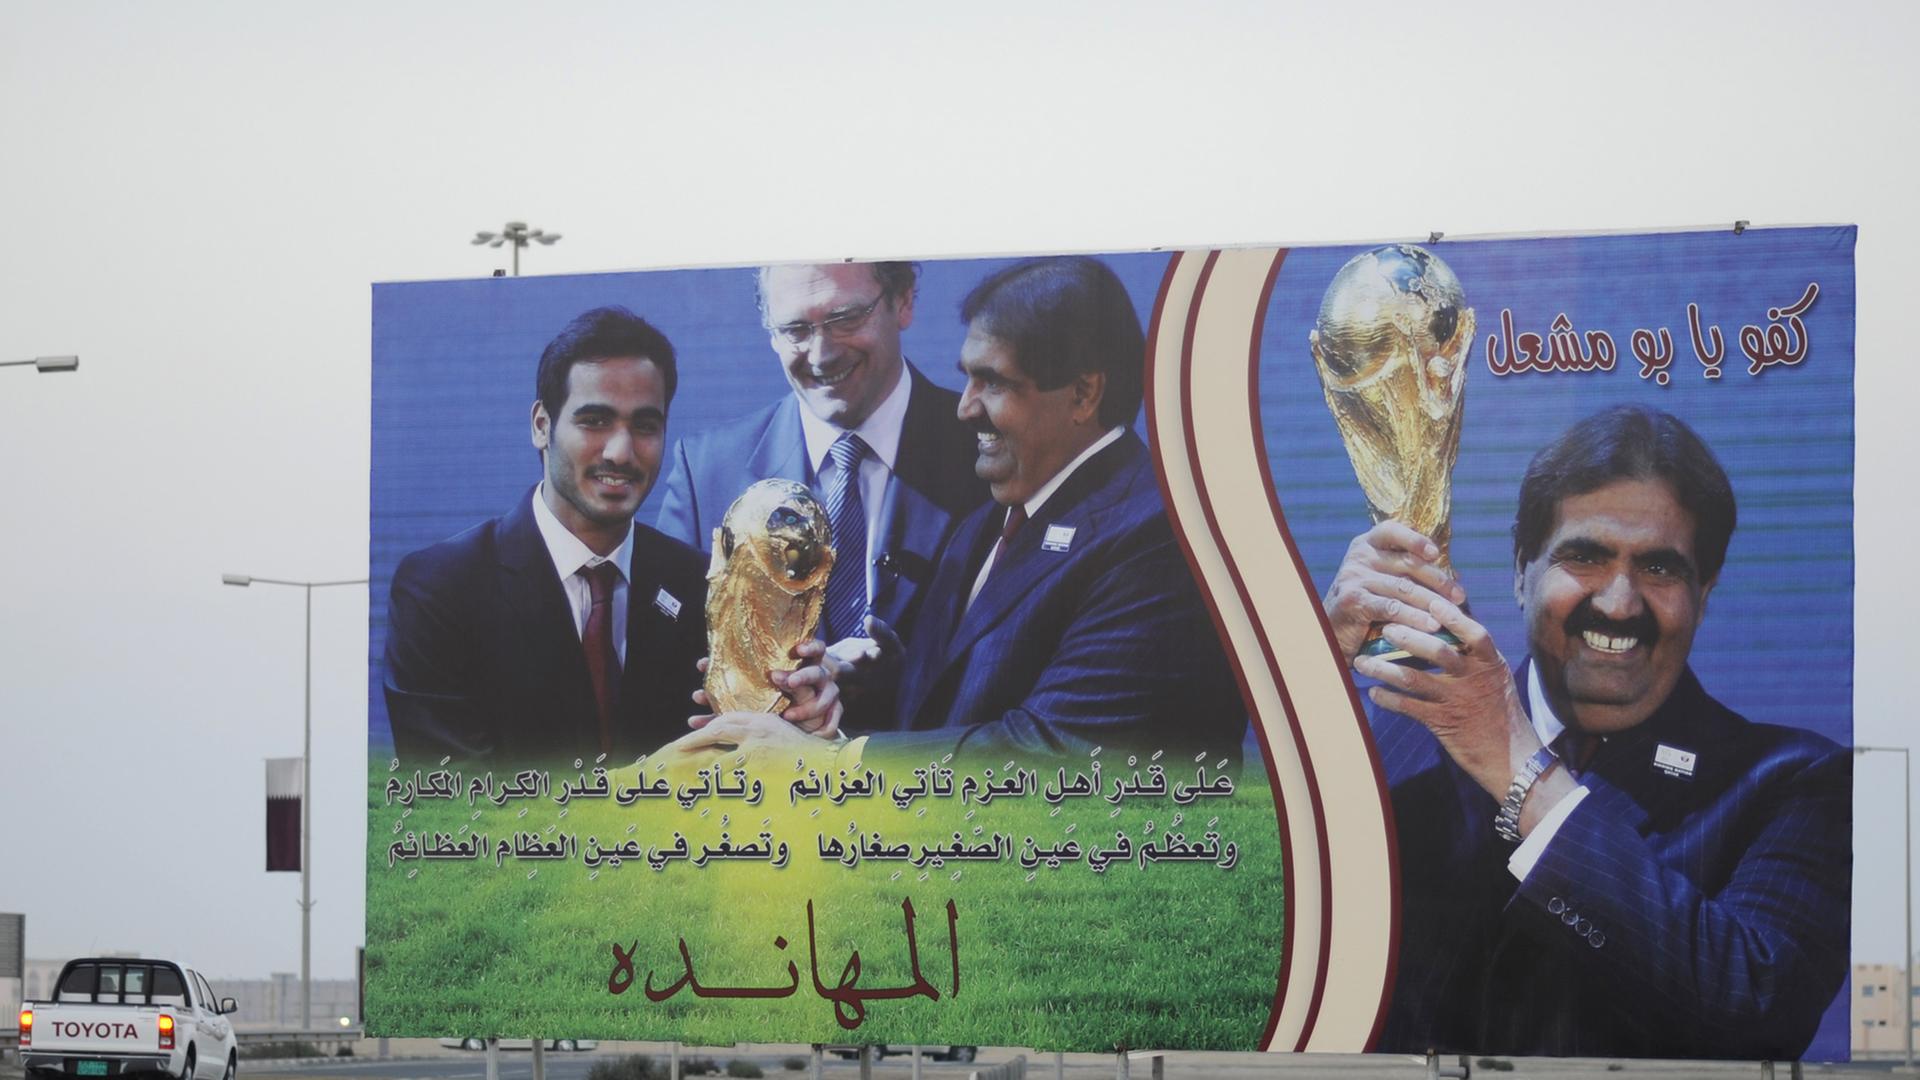 Plakat in Katar, auf dem Hamad ibn Dschasim ibn Dschabir Al Thani, der Premierminister, zu sehen ist, der den Fußball-WM-Pokal in Händen hält.